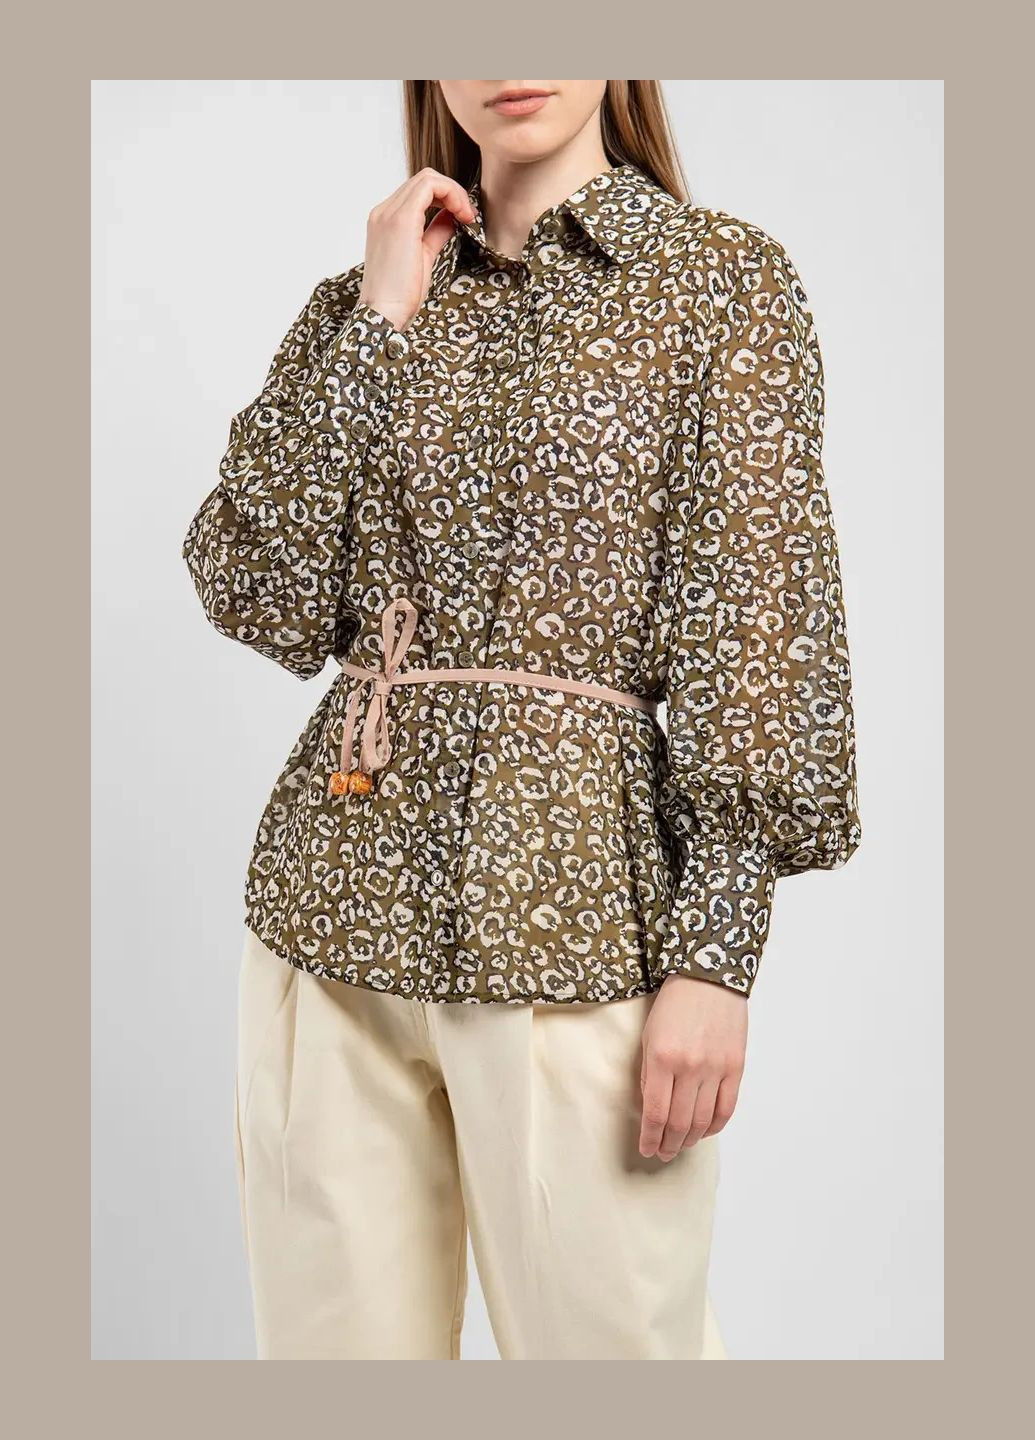 Оливковая (хаки) демисезонная блуза женская на пуговицы в анималистический принт хаки mkaz6215-2 Modna KAZKA